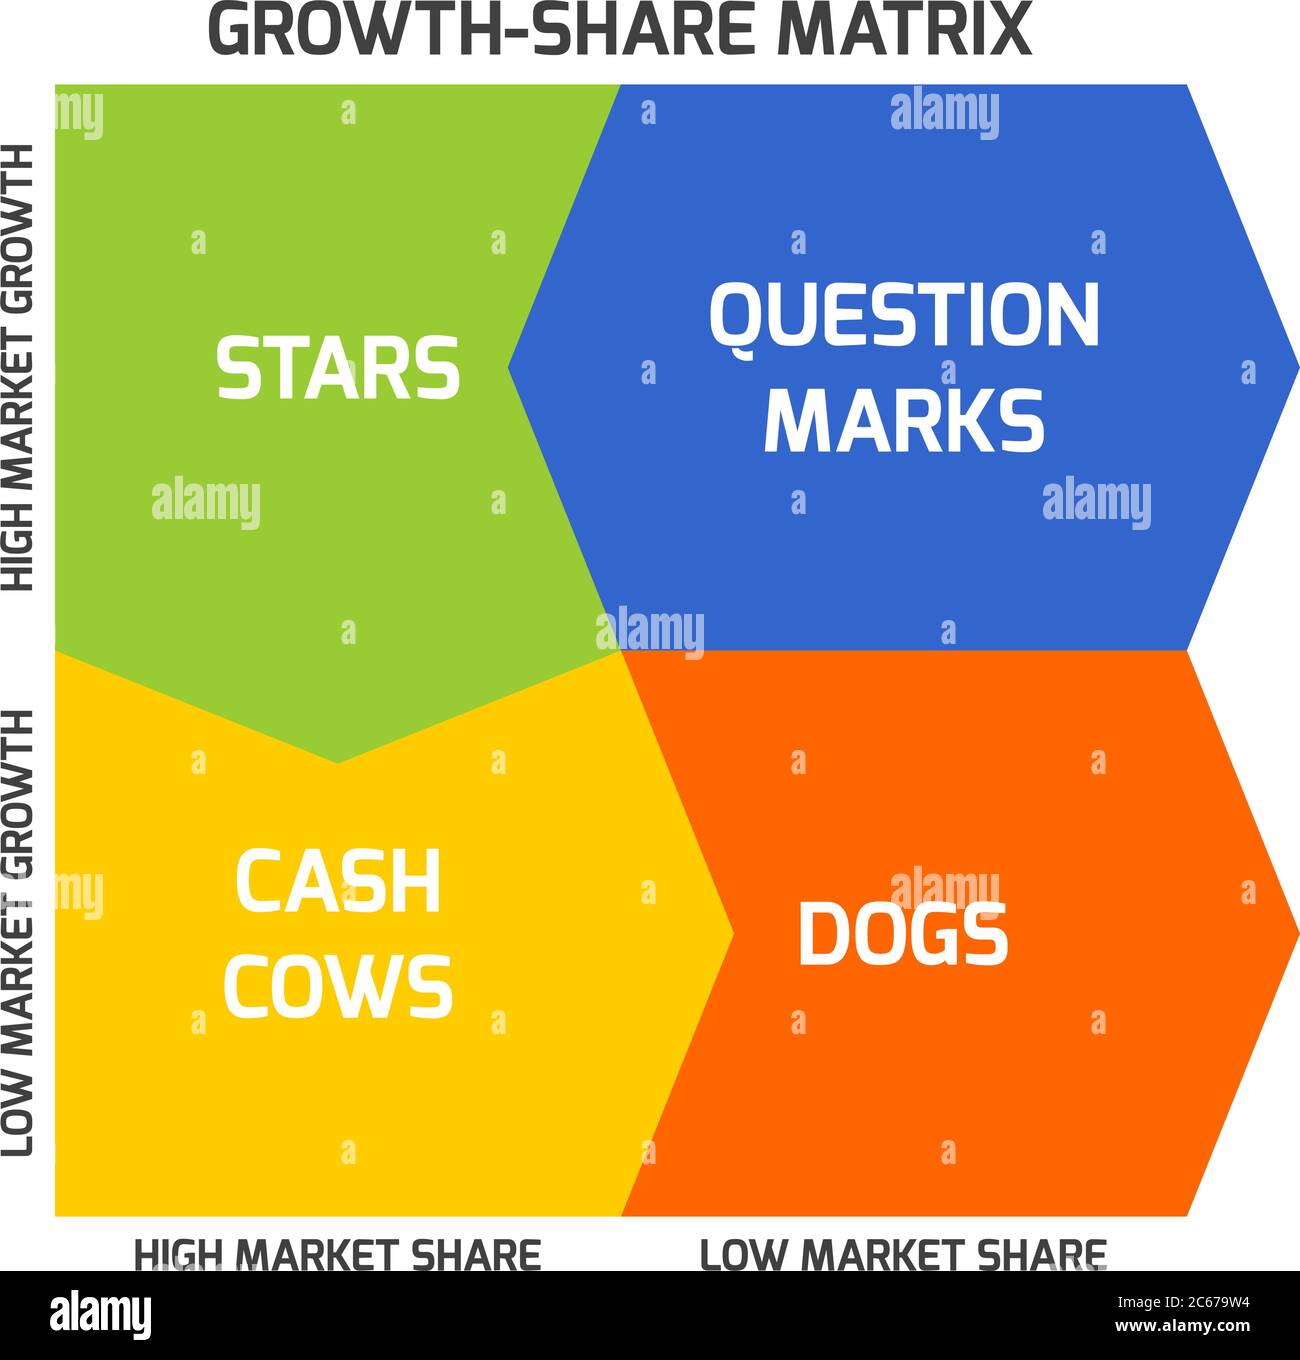 La matrice BCG, ou matrice Boston, vise à identifier les perspectives de croissance élevée en classant les produits en fonction du taux de croissance et de la part de marché. Illustration de Vecteur